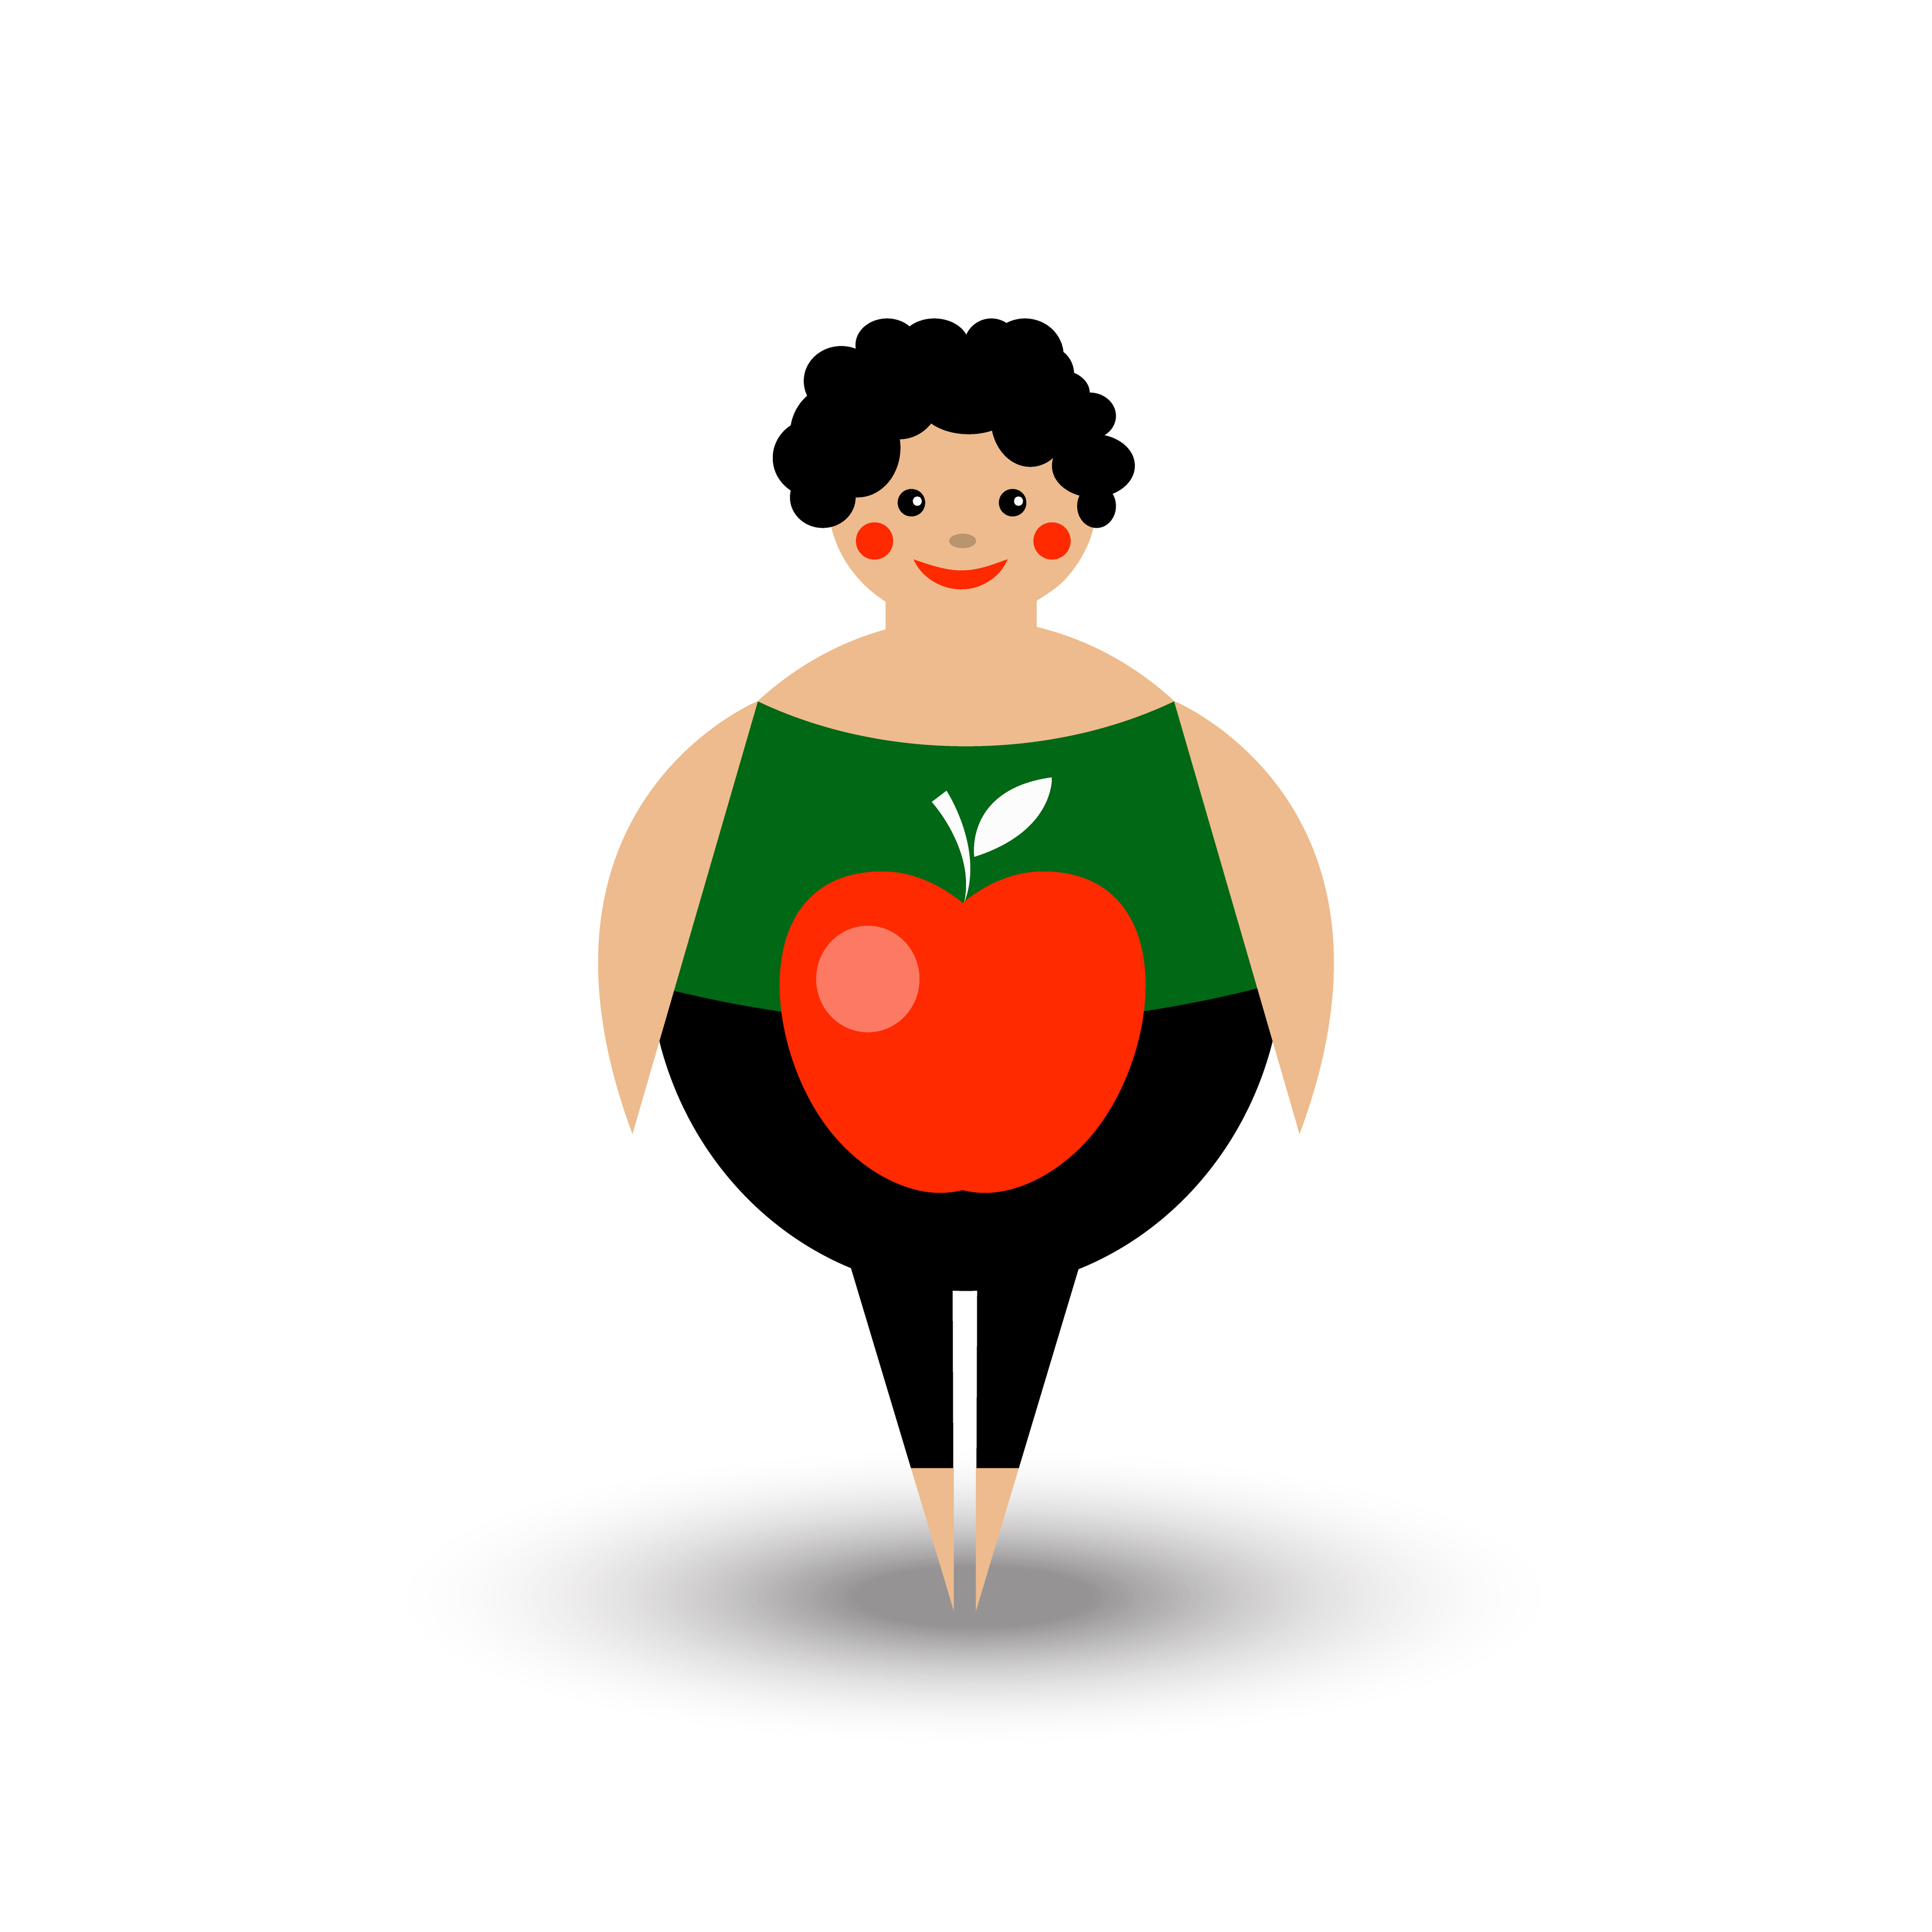 Ябълковидното тяло увеличава риска от сърдечносъдови болести